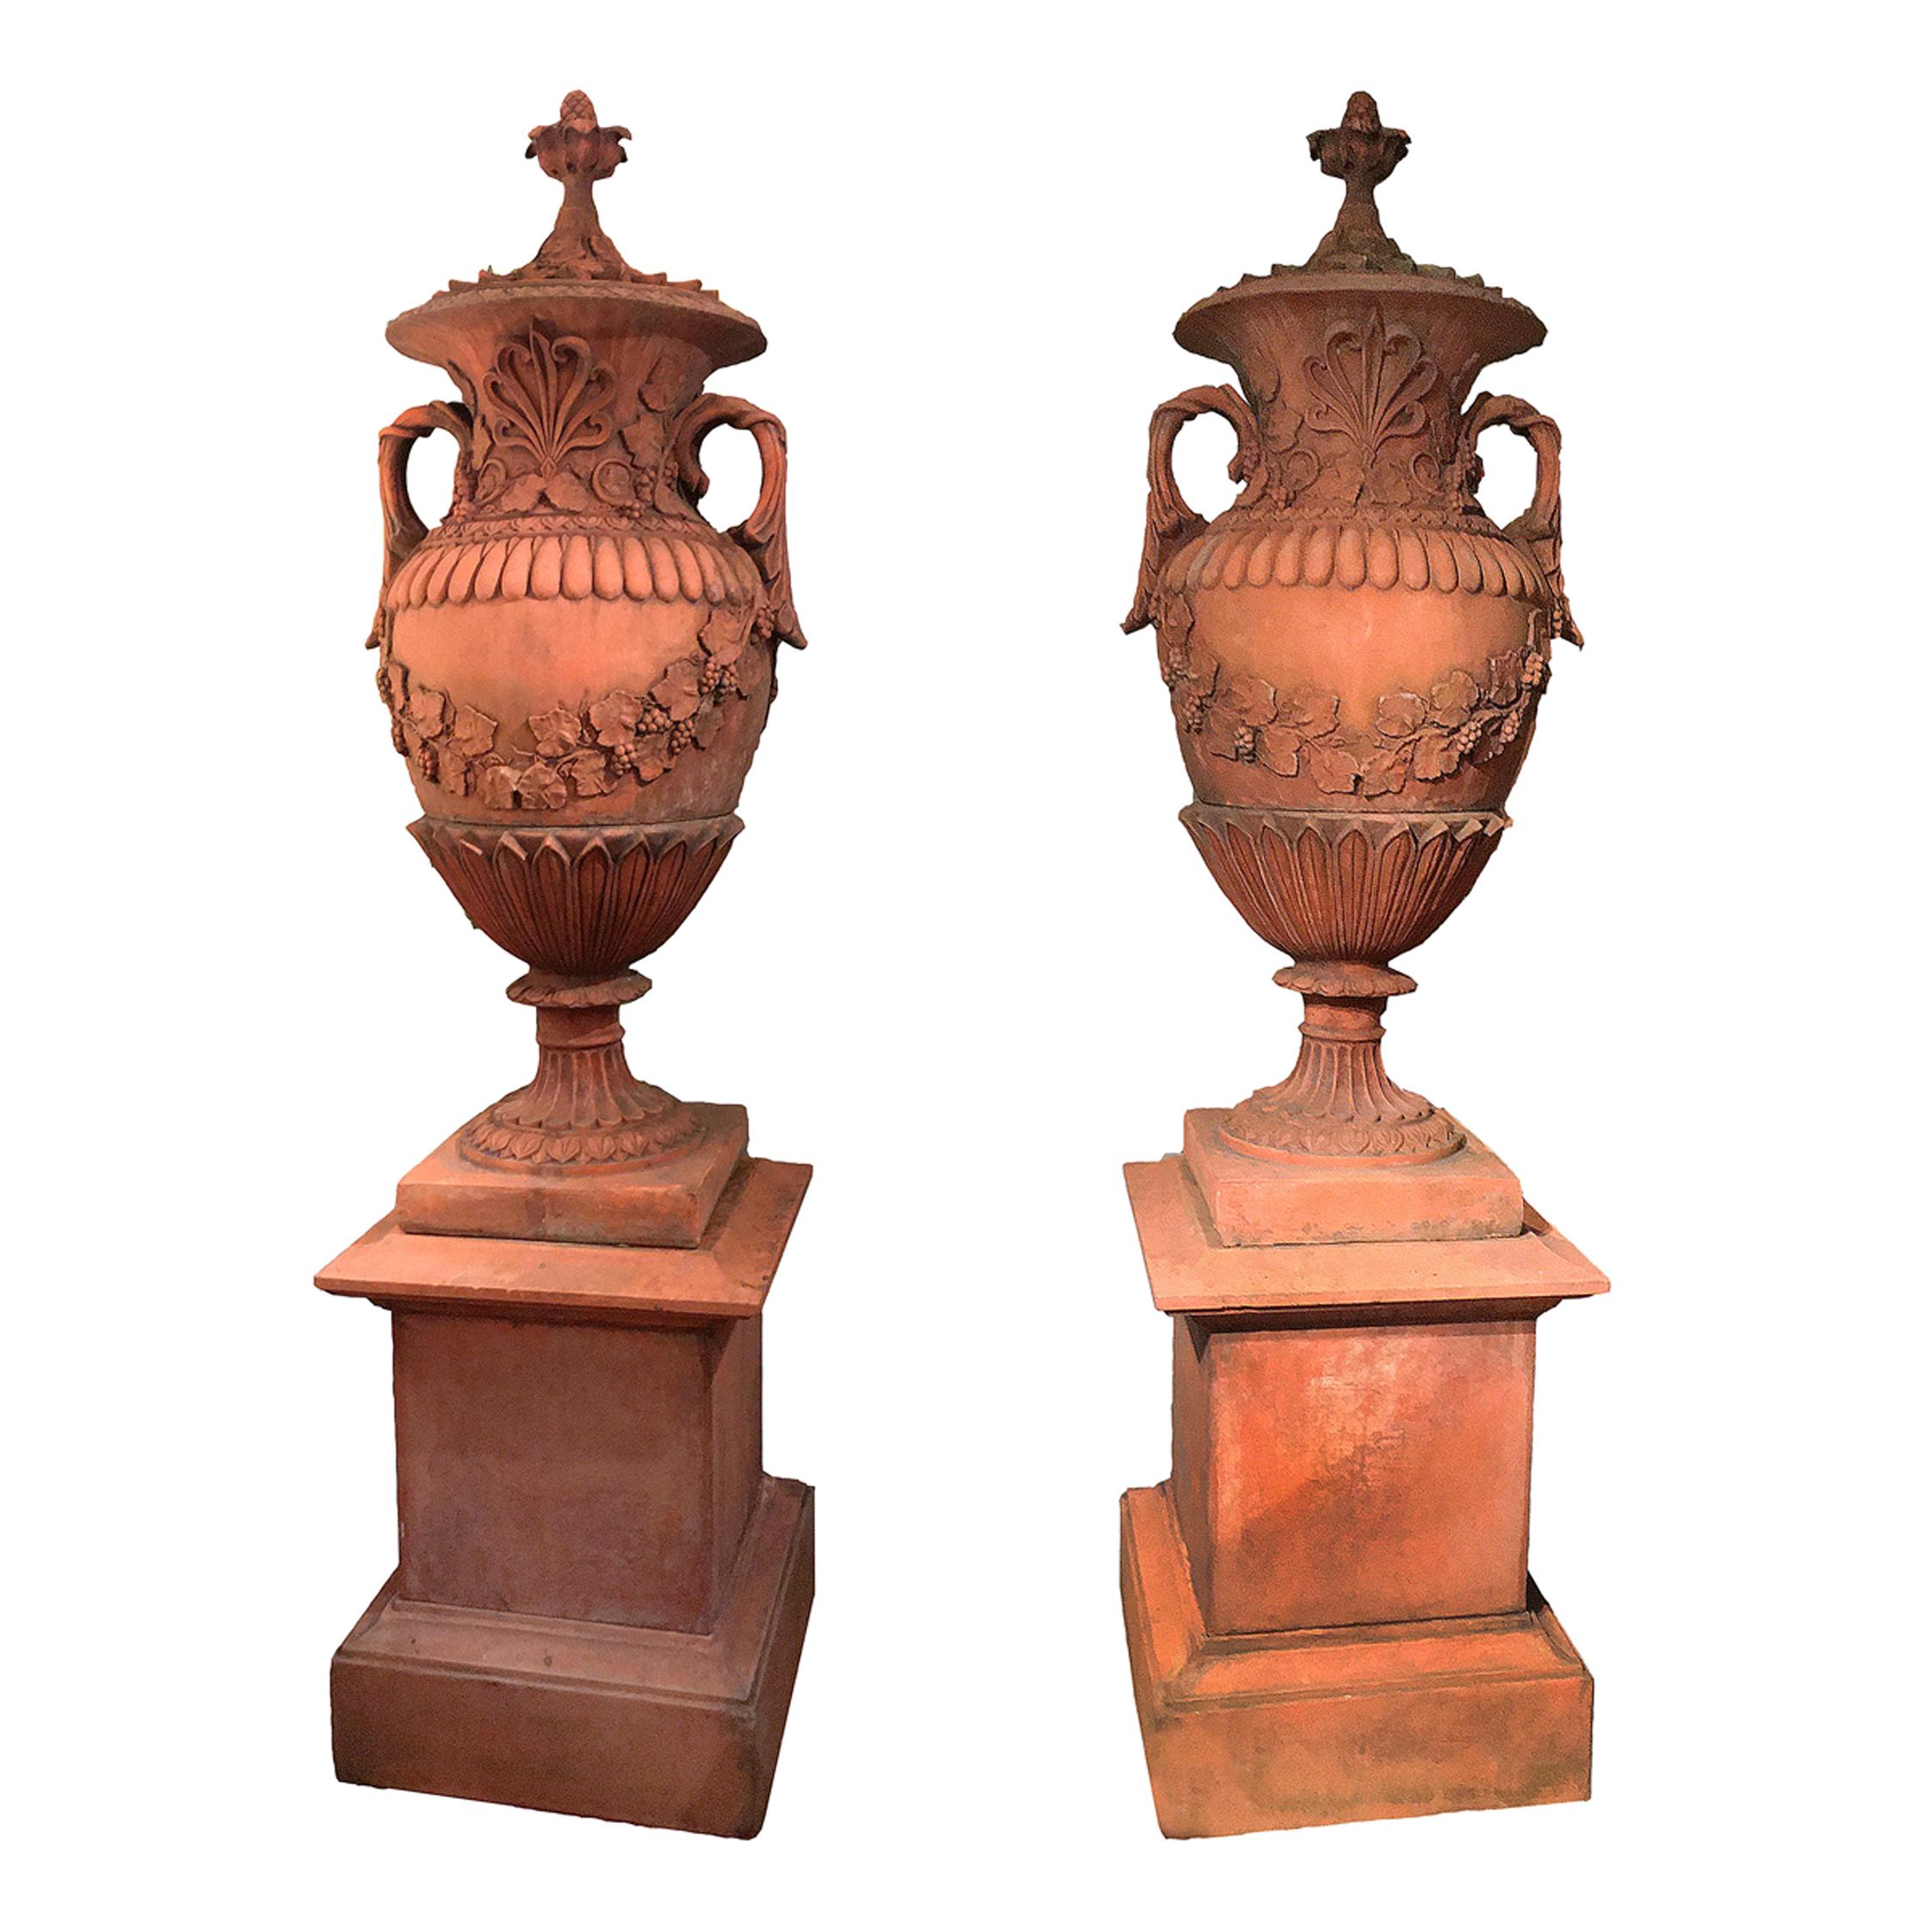 Paar neoklassizistische Terrakotta-Urnen und -Deckel des frühen 19. Jahrhunderts auf Sockeln